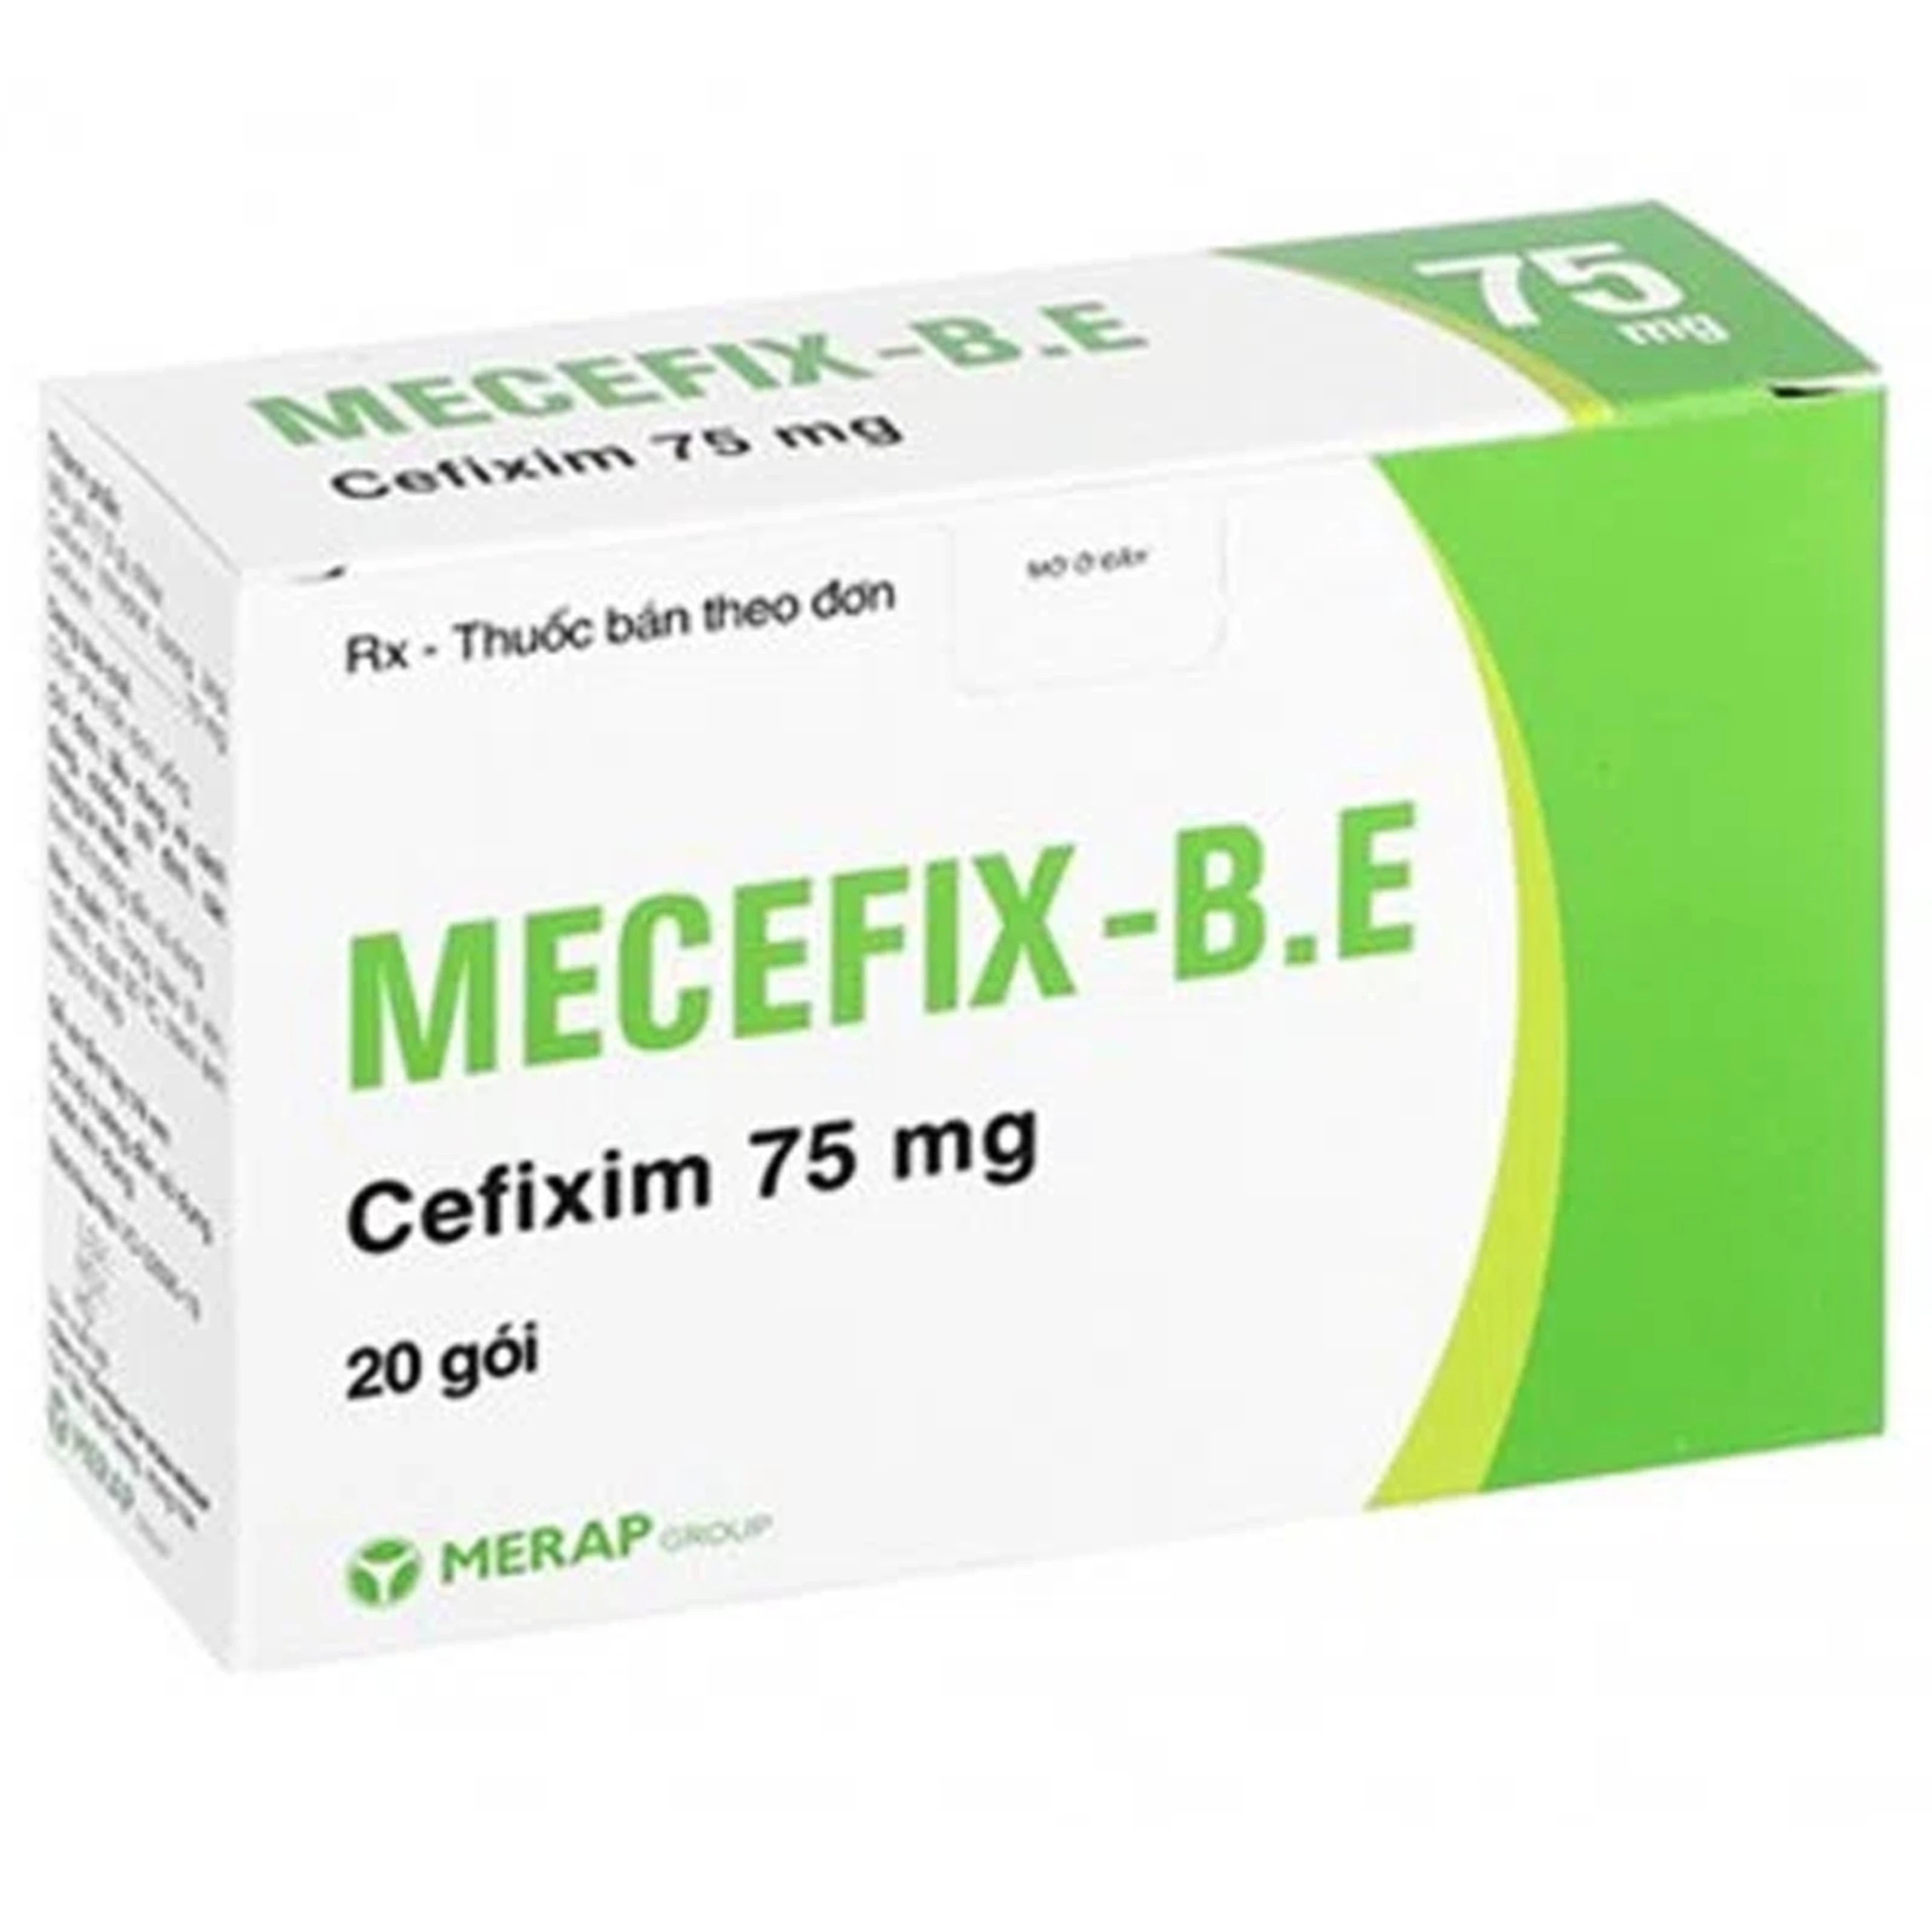 Cốm pha hỗn dịch uống Mecefix-B.E 75mg Merap điều trị nhiễm khuẩn đường tiết niệu (20 gói)